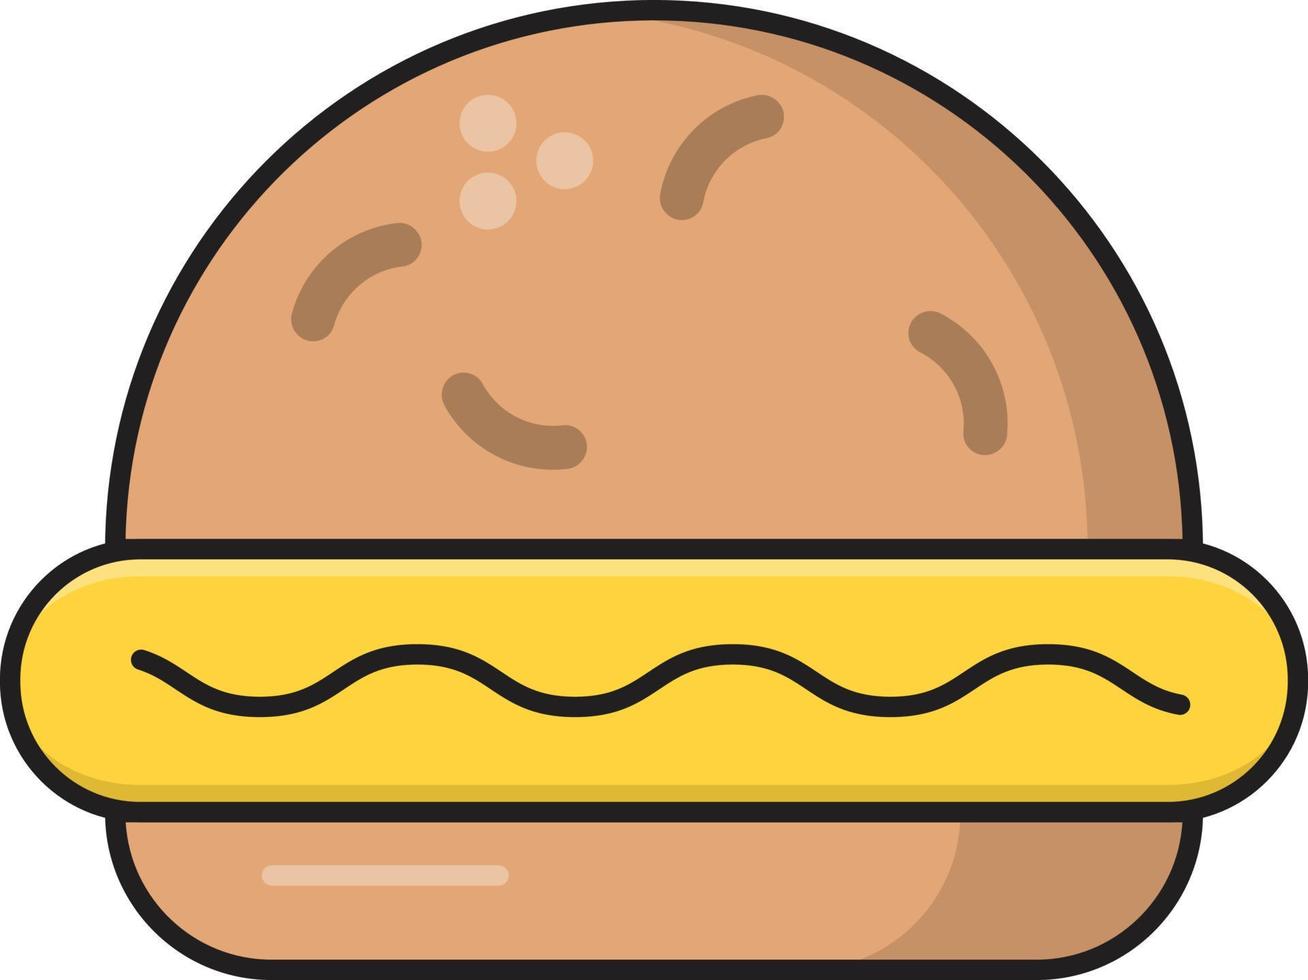 ilustração vetorial de hambúrguer em ícones de símbolos.vector de qualidade background.premium para conceito e design gráfico. vetor